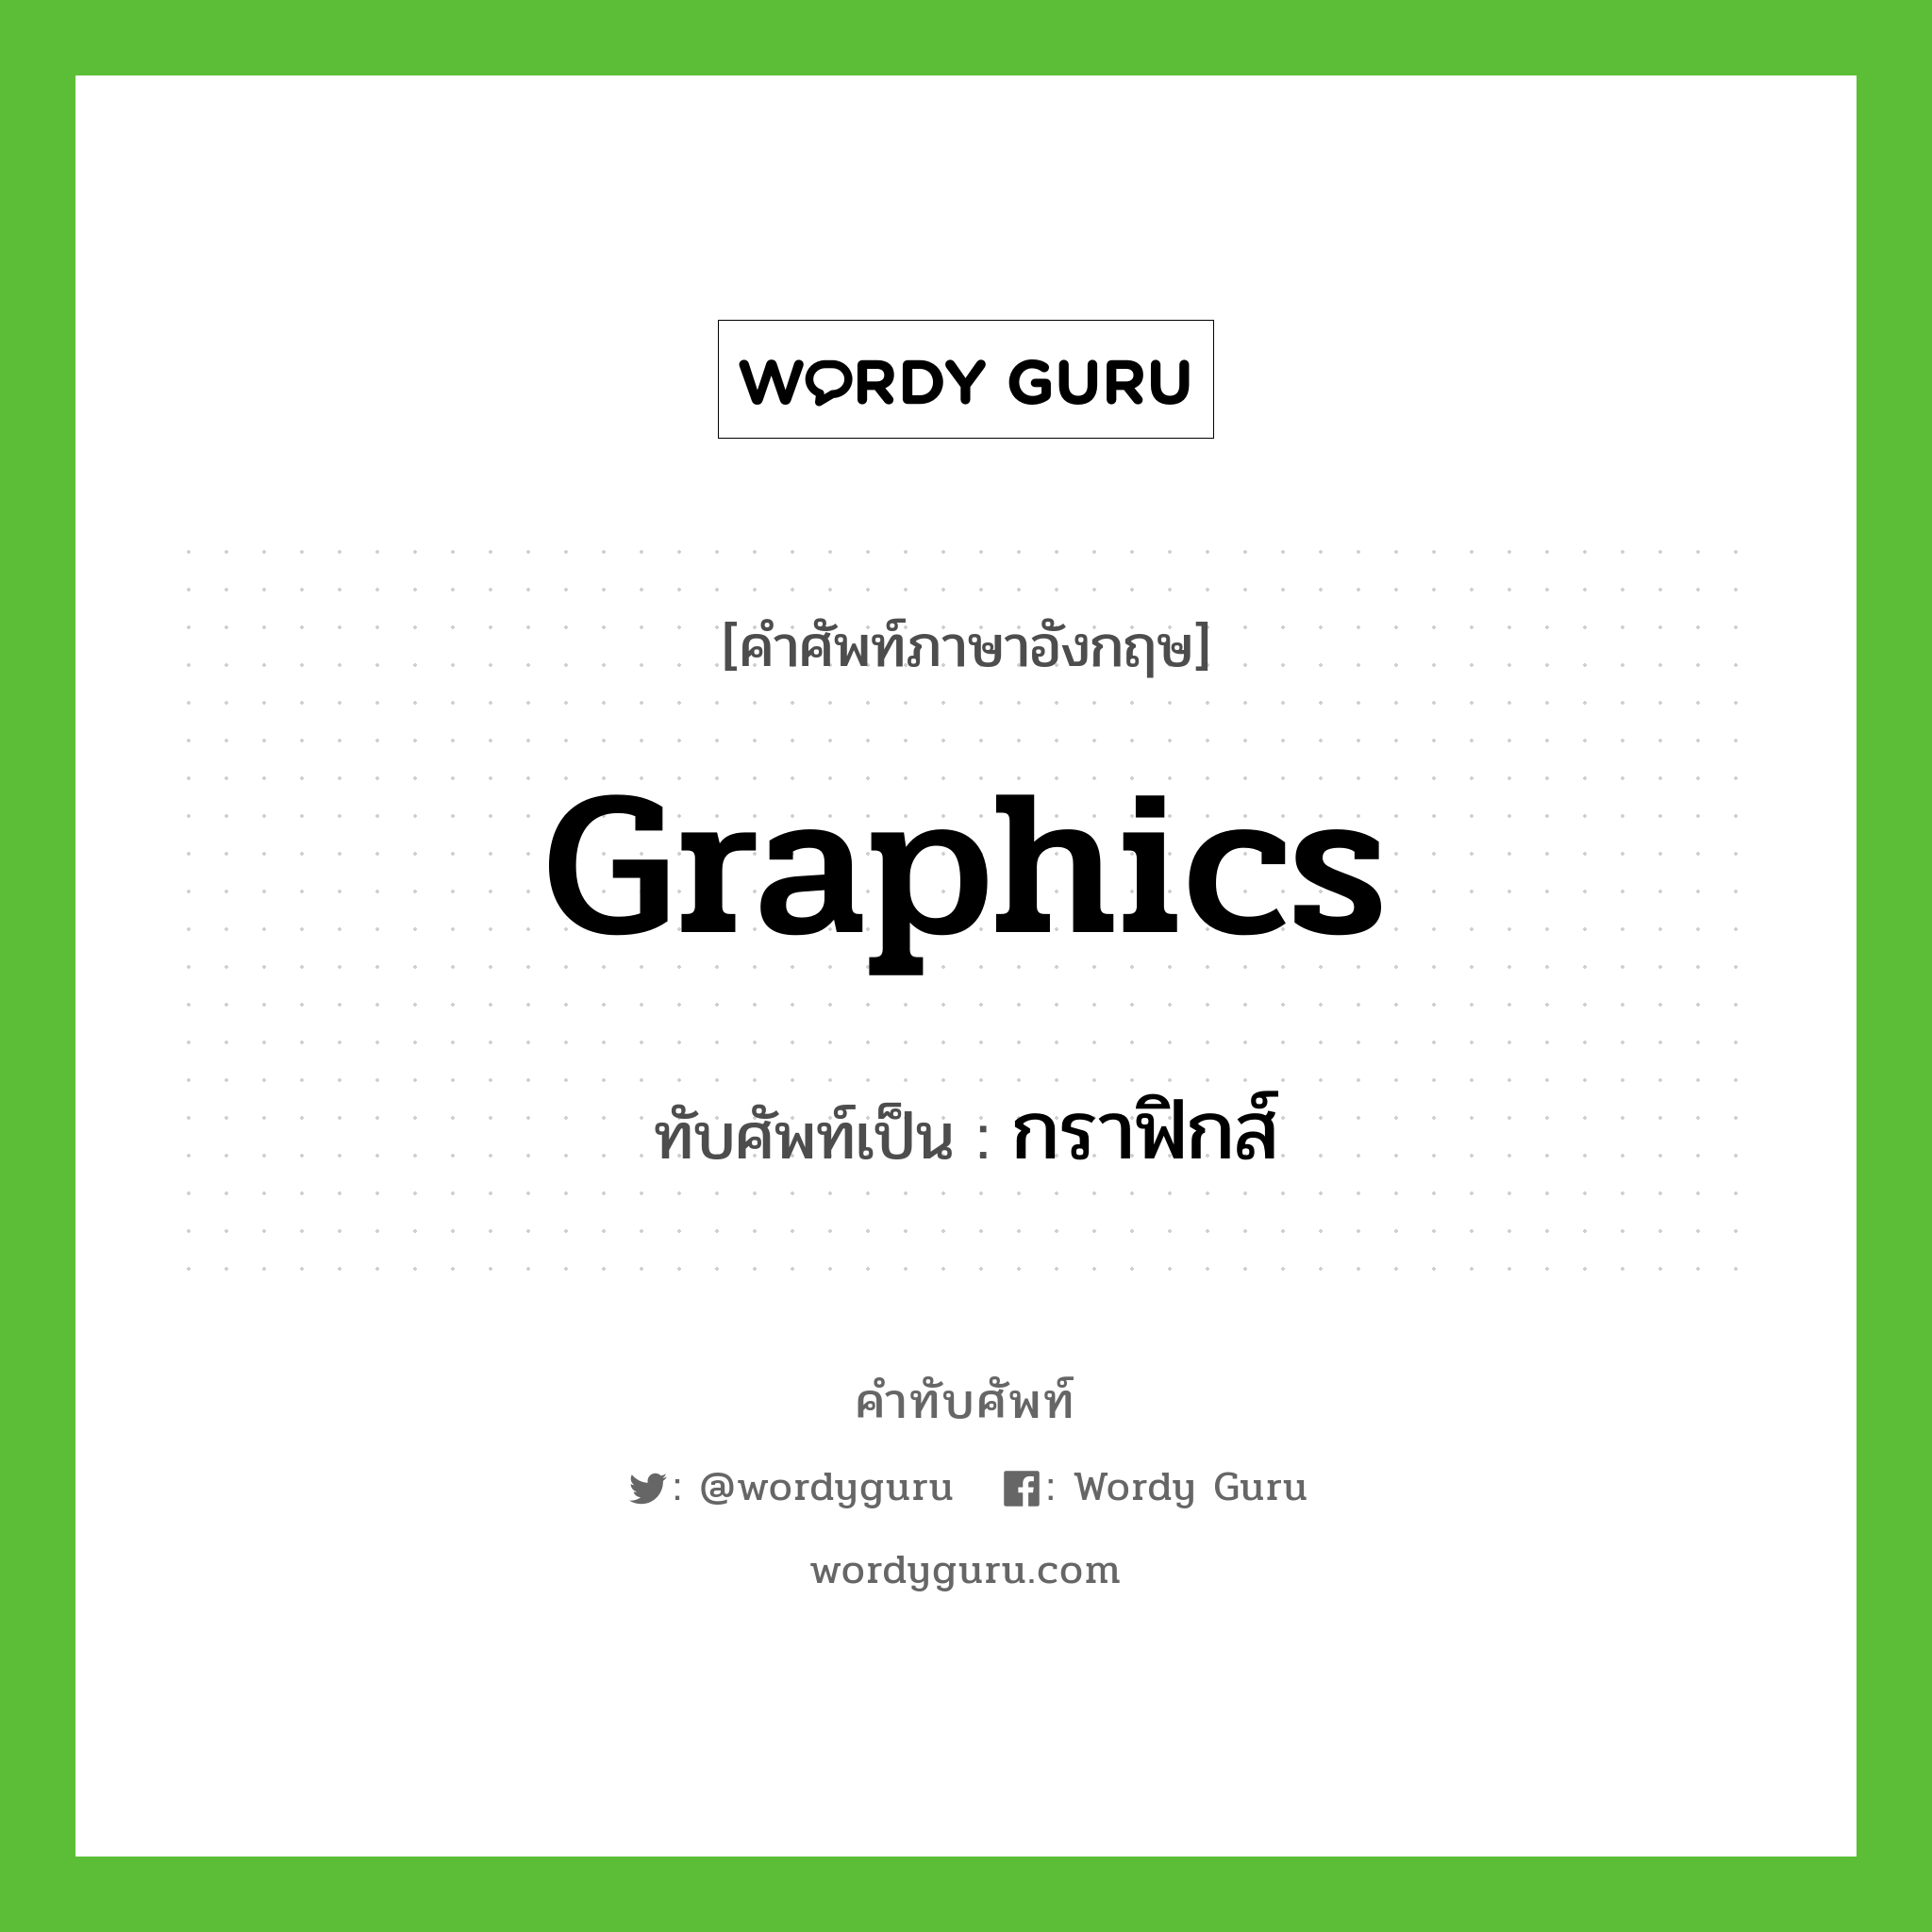 graphics เขียนเป็นคำไทยว่าอะไร?, คำศัพท์ภาษาอังกฤษ graphics ทับศัพท์เป็น กราฟิกส์